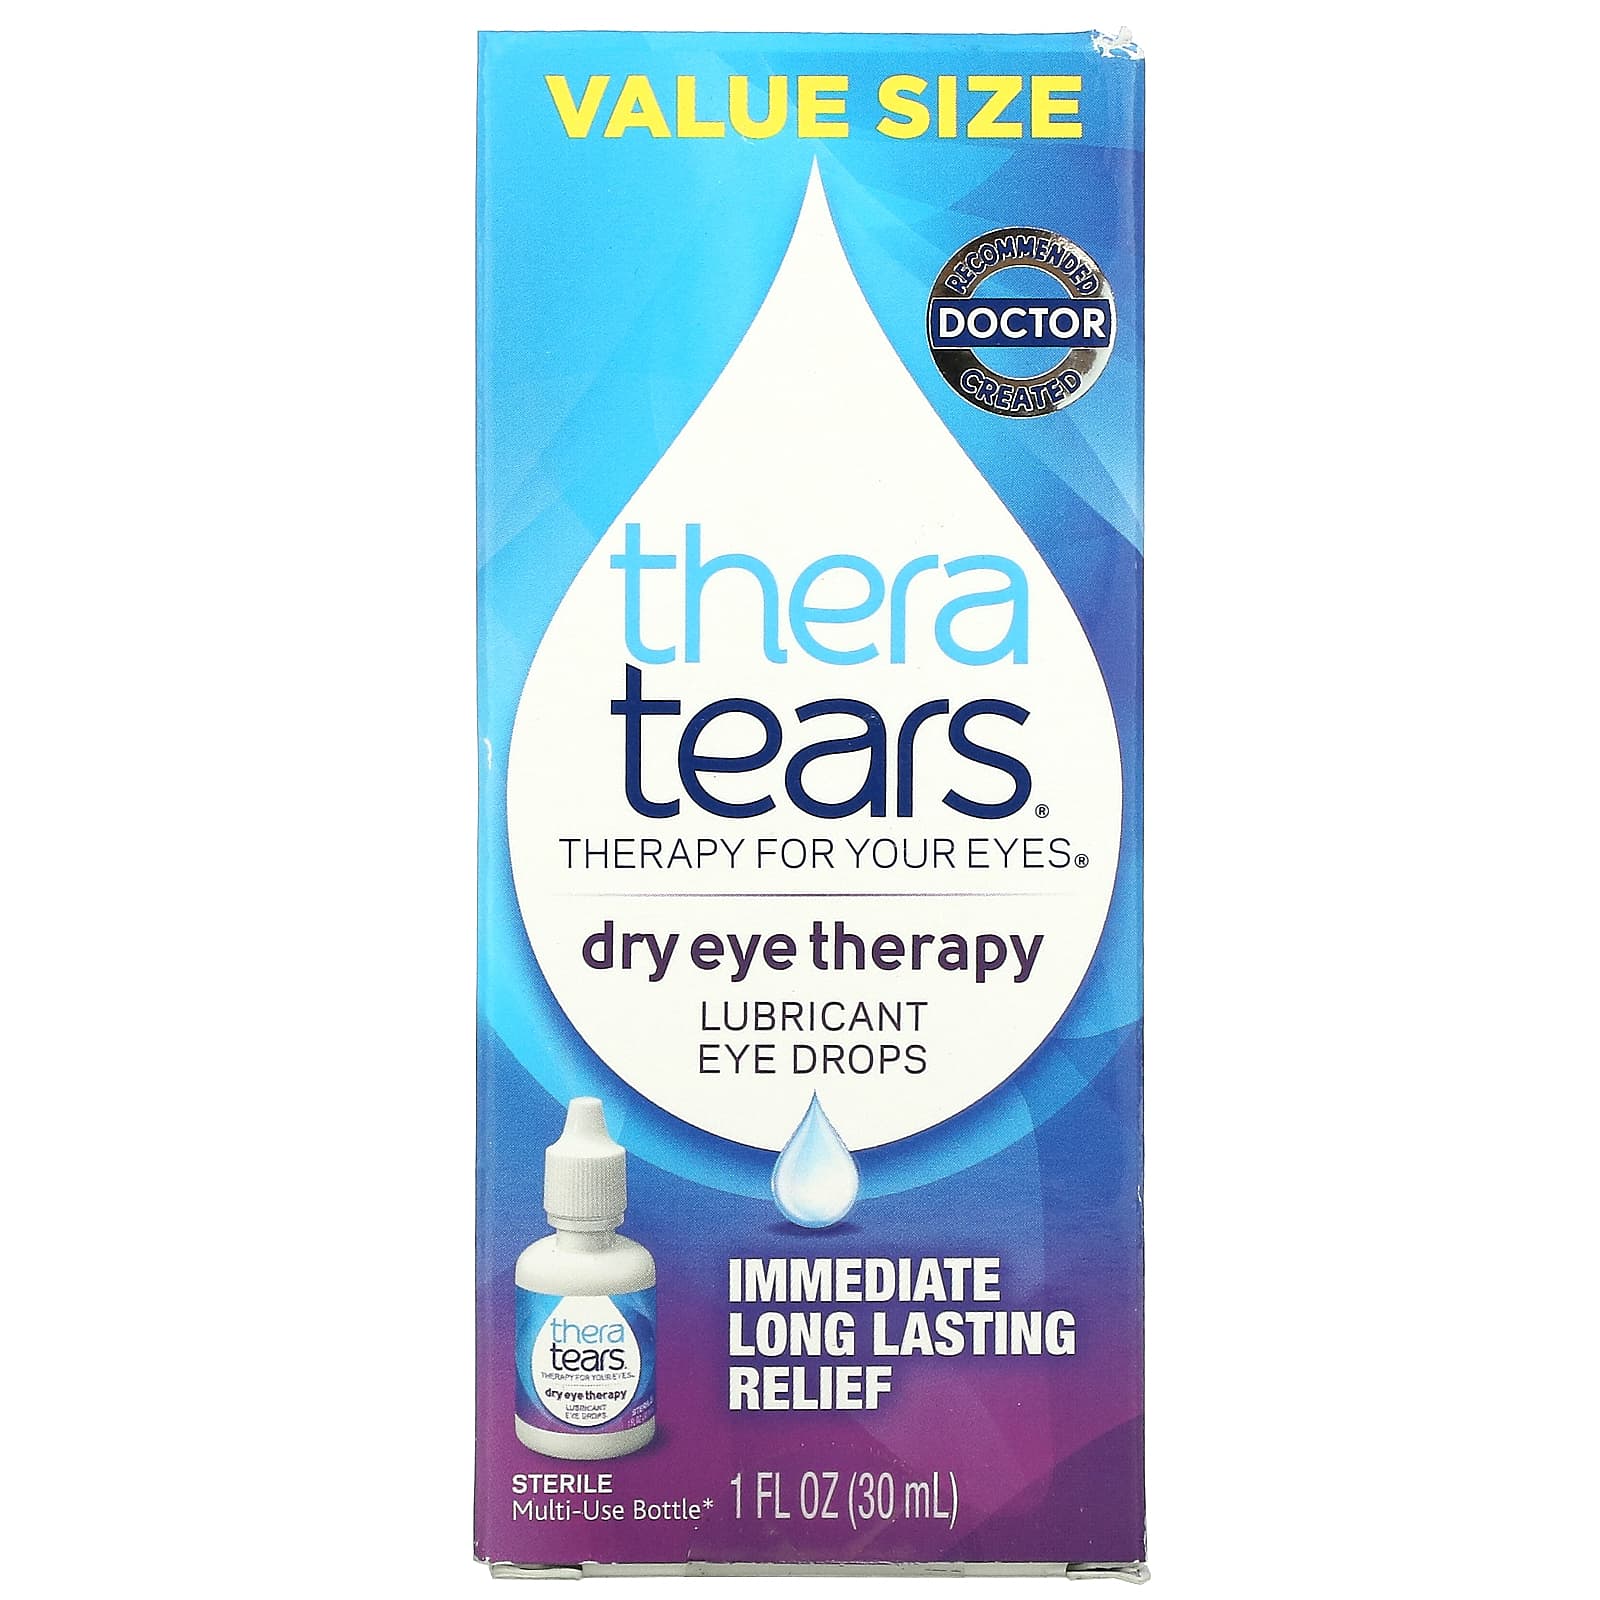  AGEPHA Gotas lubricantes viscosanas para ojos secos, Proporciona alivio duradero para ojos secos y picazón en los ojos, Gotas  para los ojos para aliviar el enrojecimiento